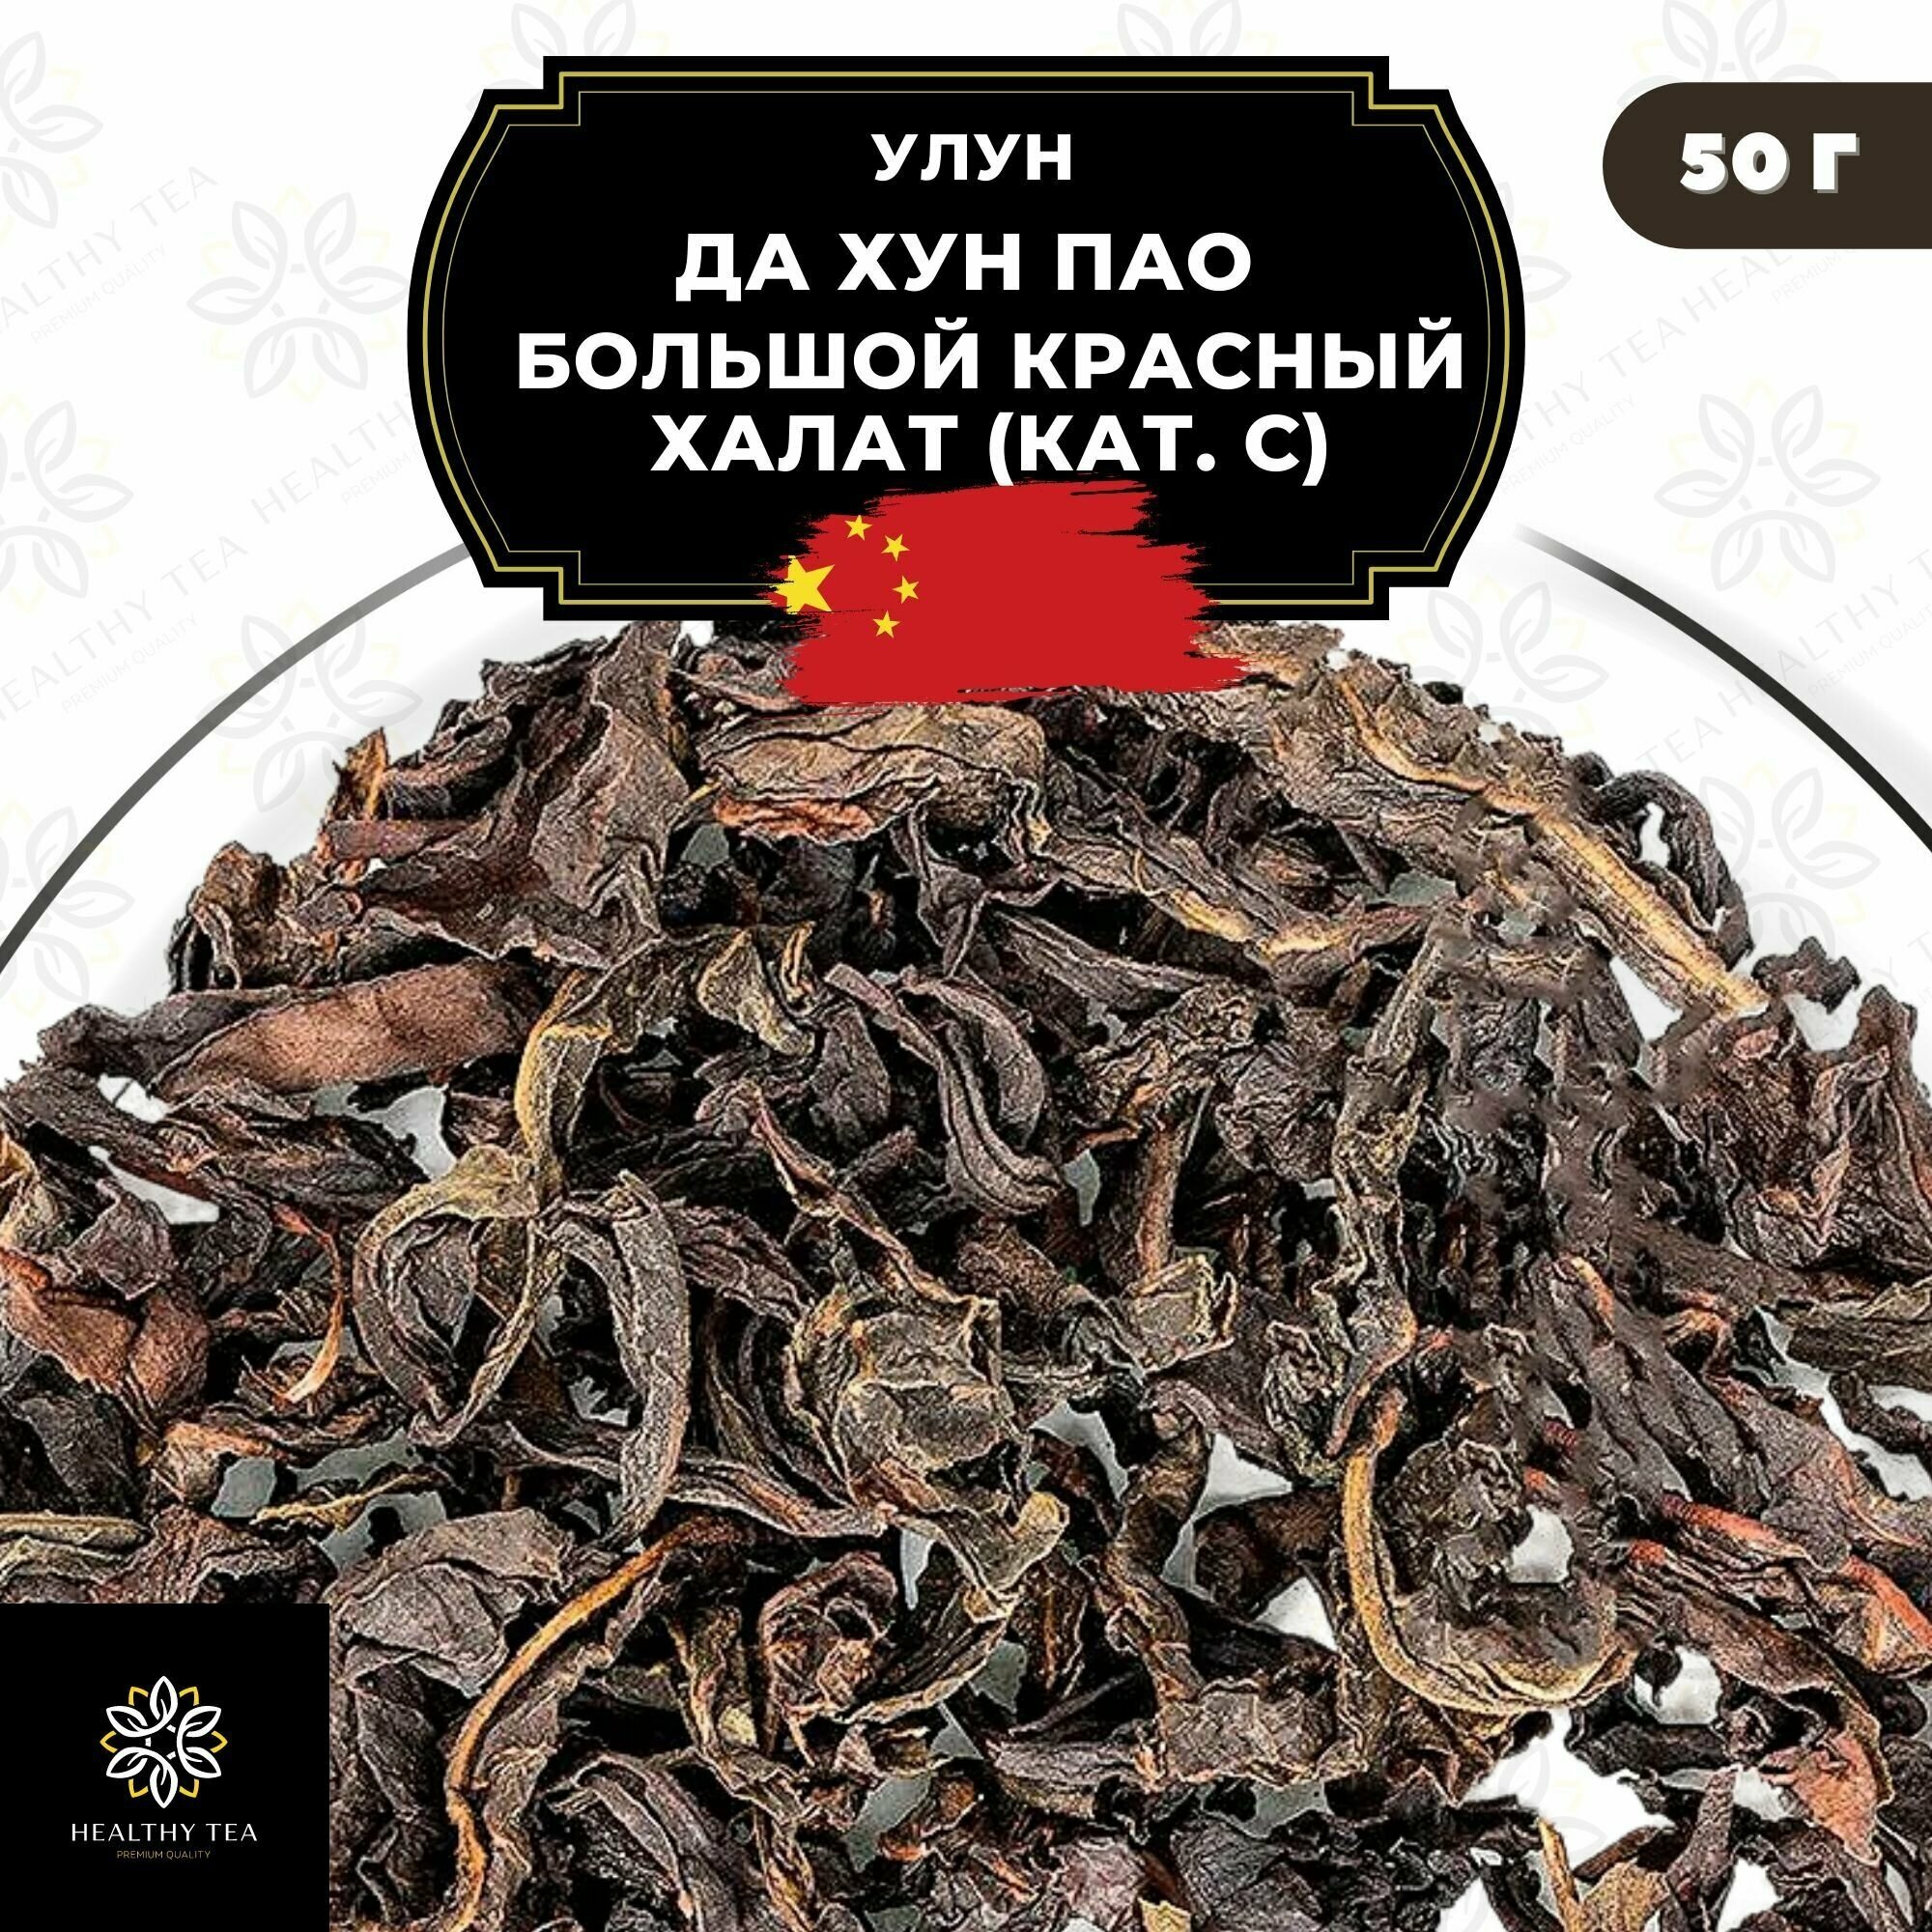 Улун Да Хун Пао (Большой красный халат), (кат. С) Полезный чай / HEALTHY TEA, 50 г